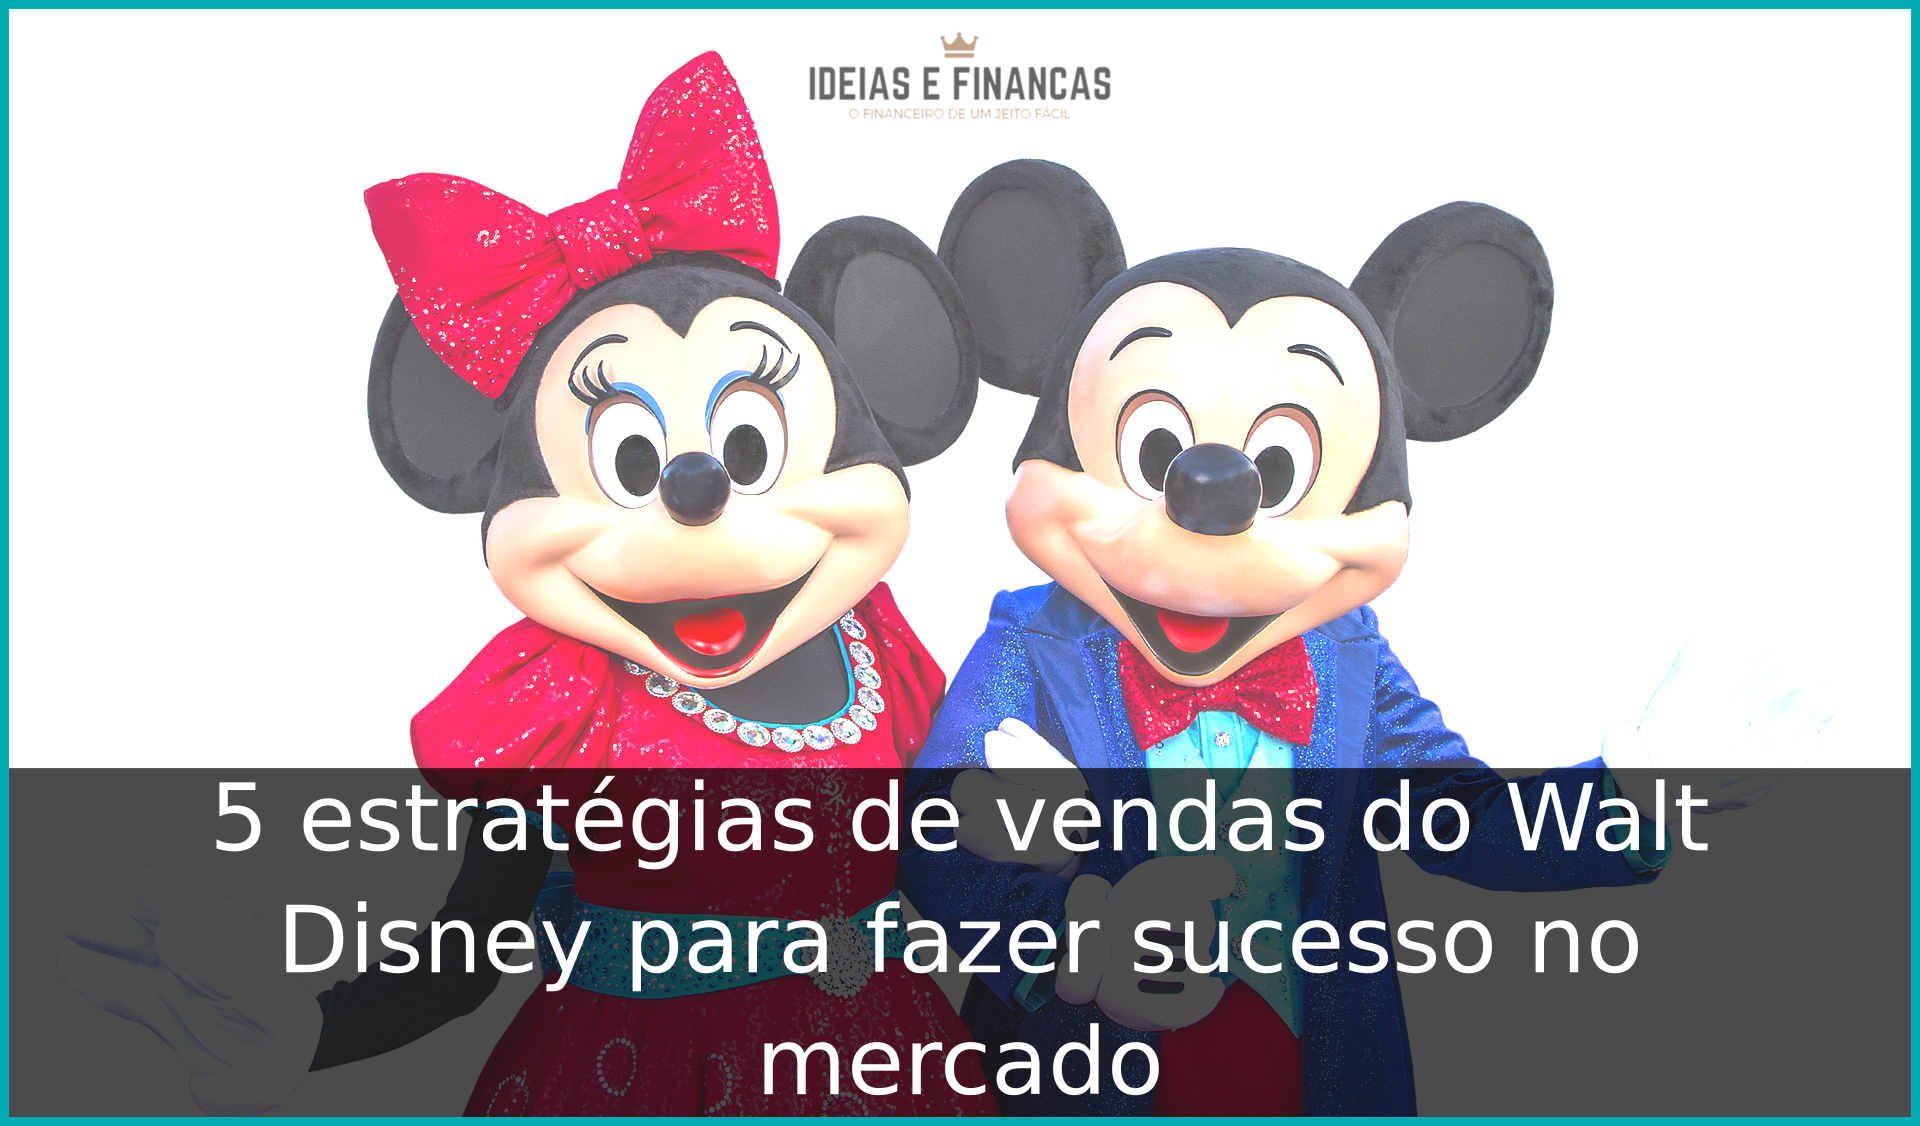 5 estratégias de vendas do Walt Disney para fazer sucesso no mercado